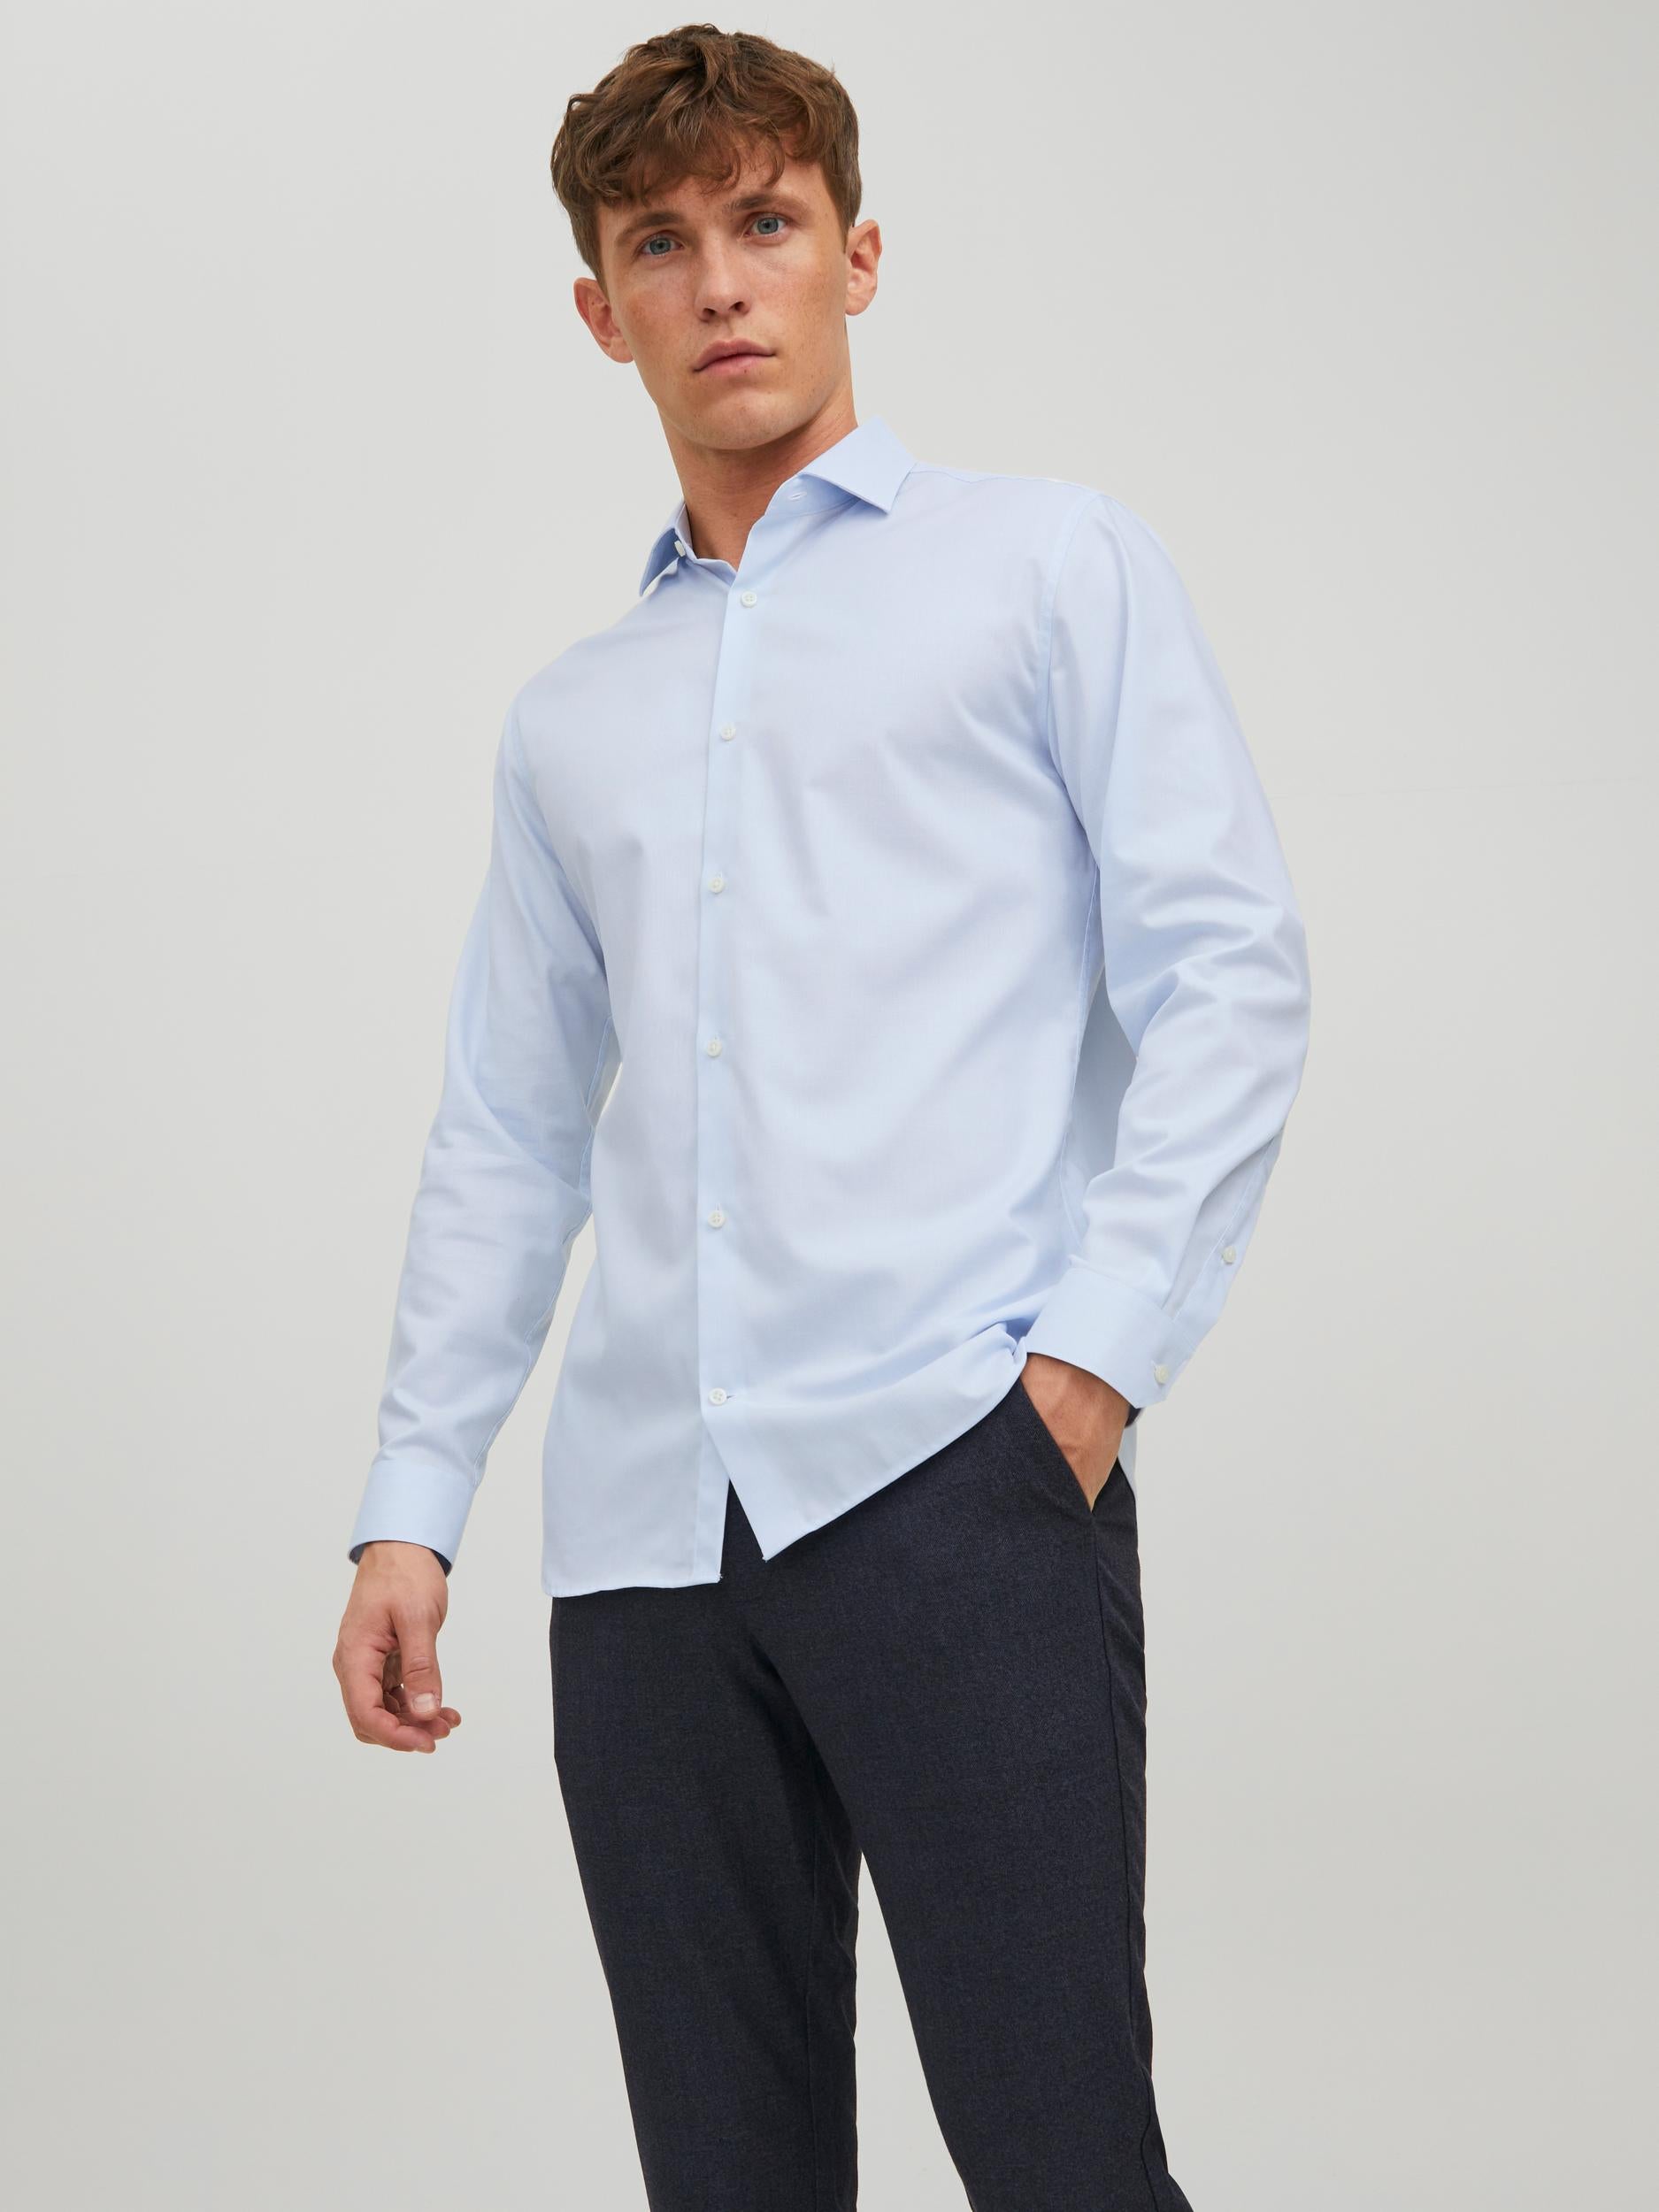 Men's Parker Cashmere Blue Shirt-Front View